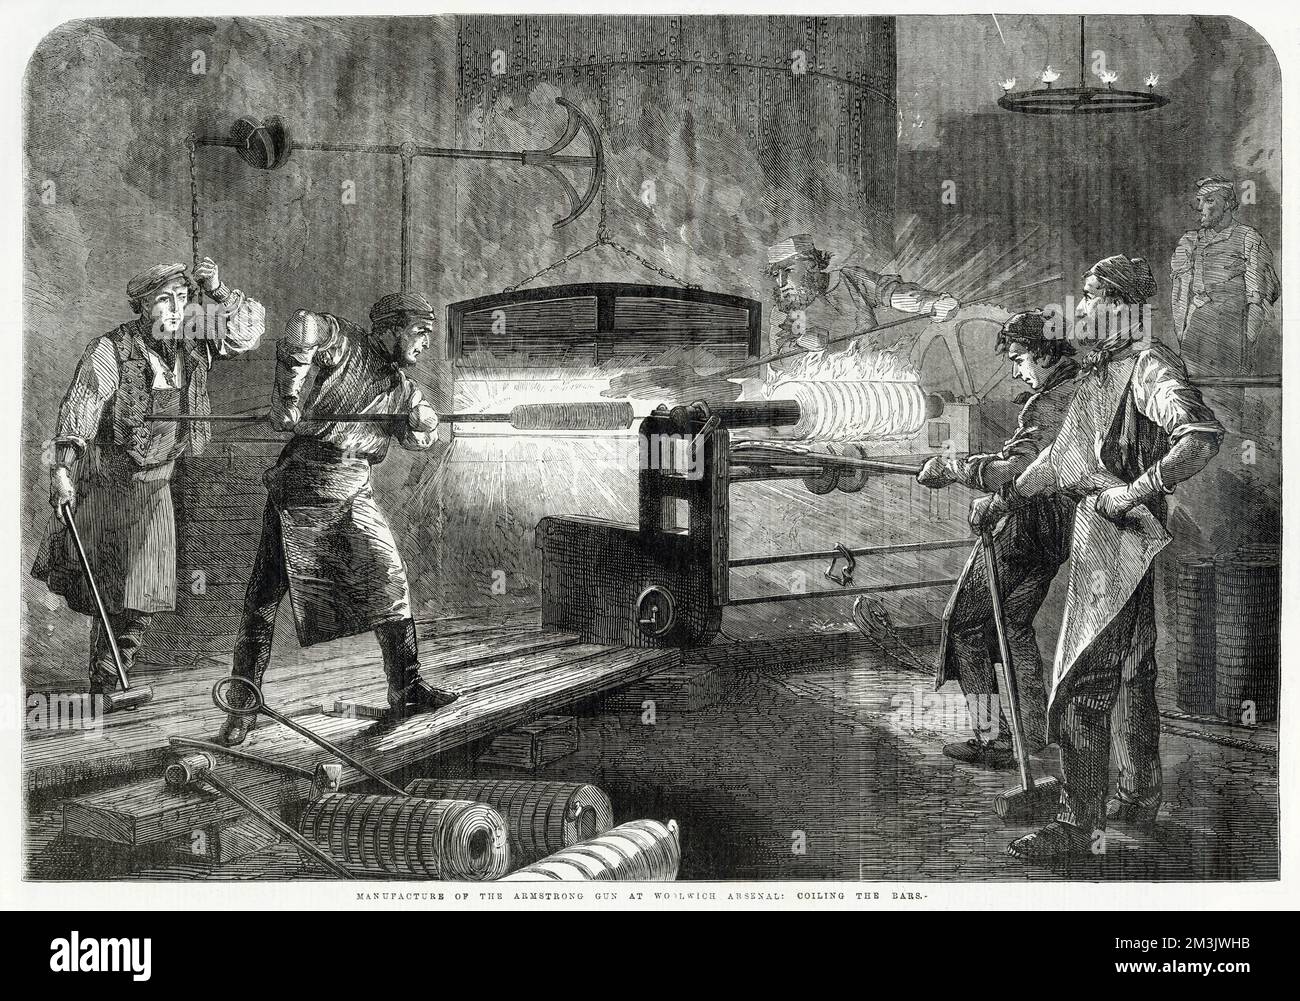 Scène à Woolwich Arsenal, Londres, montrant une arme armstrong en cours de fabrication. Ce canon a été introduit dans l'armée britannique en 1859 et a été l'un des premiers canons de terrain de chargement de la culasse pratique de l'époque moderne. Le canon pourrait tirer un obus, un coup de balle ou un explosif 11,56lb. shell et a été considéré très précis. Situé près de l'arsenal royal, Woolwich est passé d'un dépôt de stockage à une usine de munitions à la fin du 17th siècle. L'usine Armstrong Rifle a été ouverte vers 1858. Banque D'Images